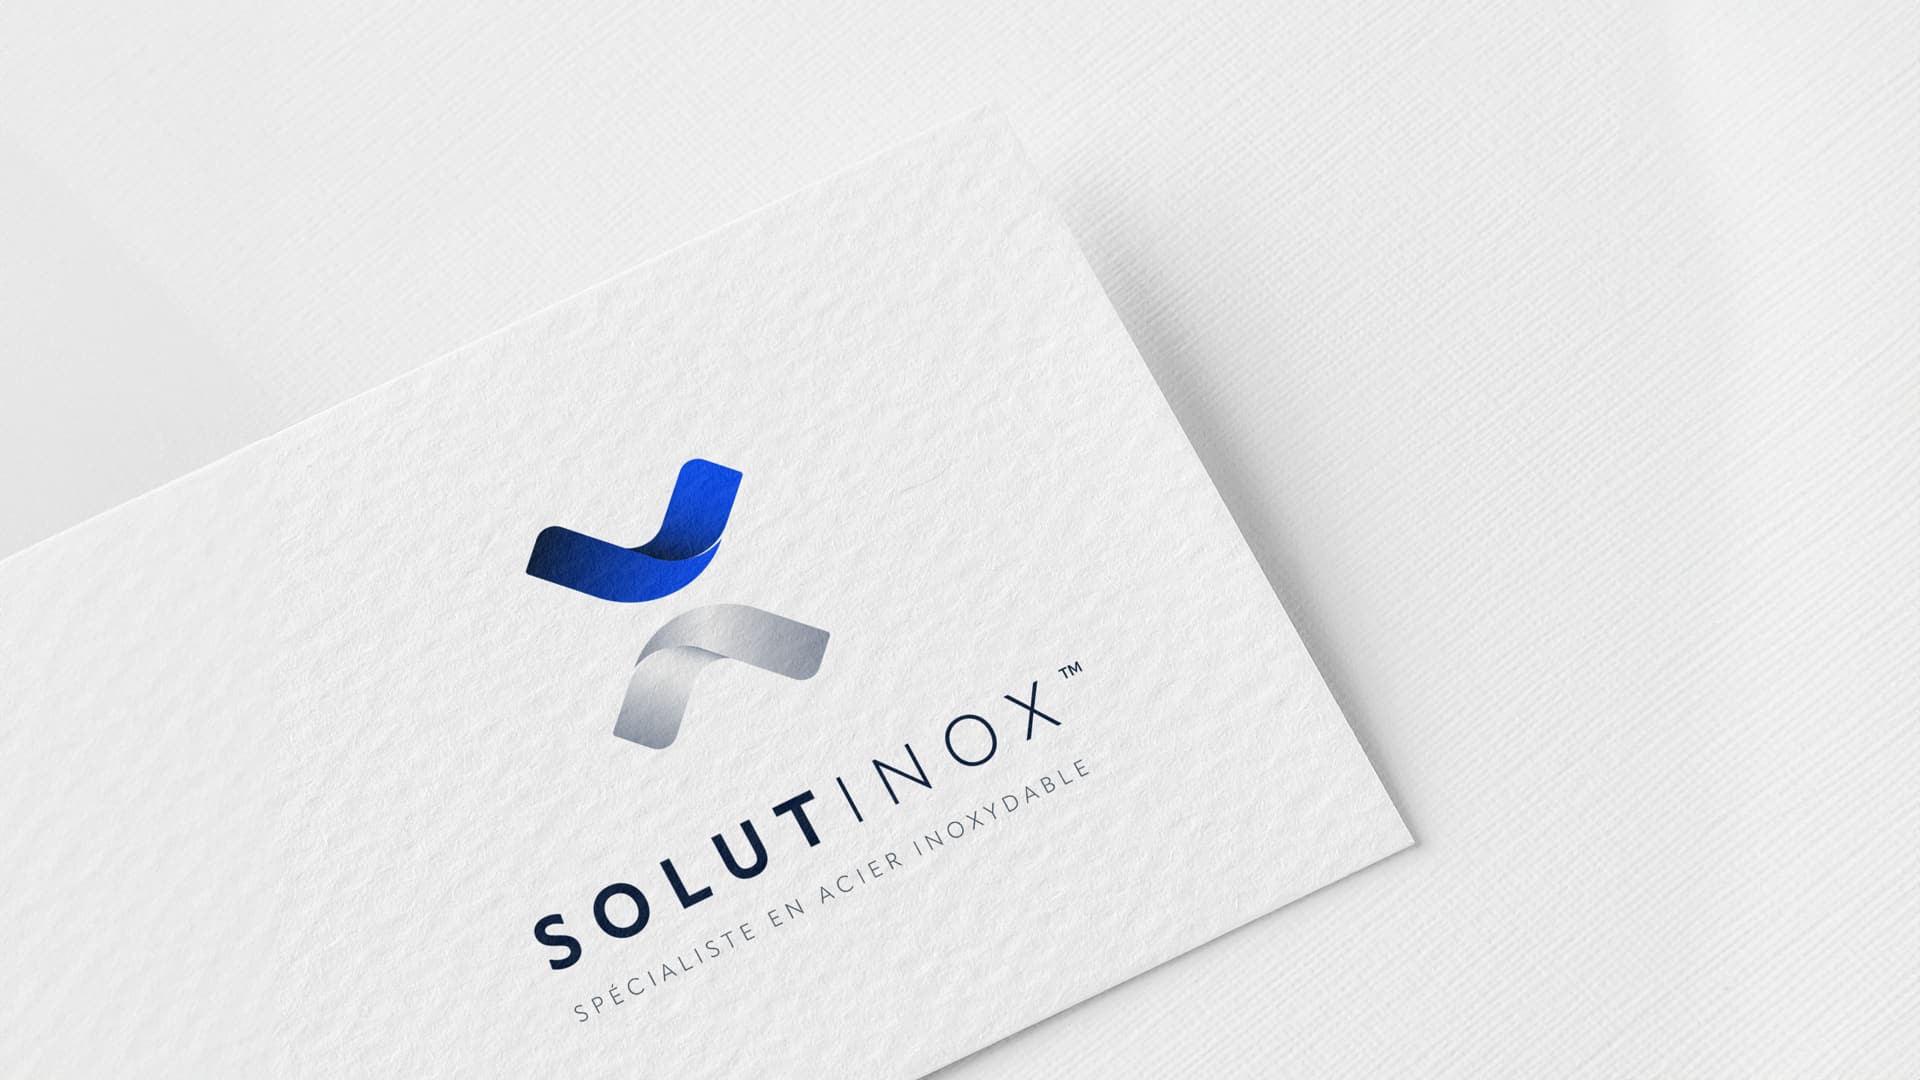 Le nouveau logo moderne et épuré de Solutinox, conçu par notre agence de communication et de charte graphique d'entreprise à Toulouse, pour refléter la robustesse et l'innovation des solutions inoxydables. Un nouveau logo pour une nouvelle identité visuelle.